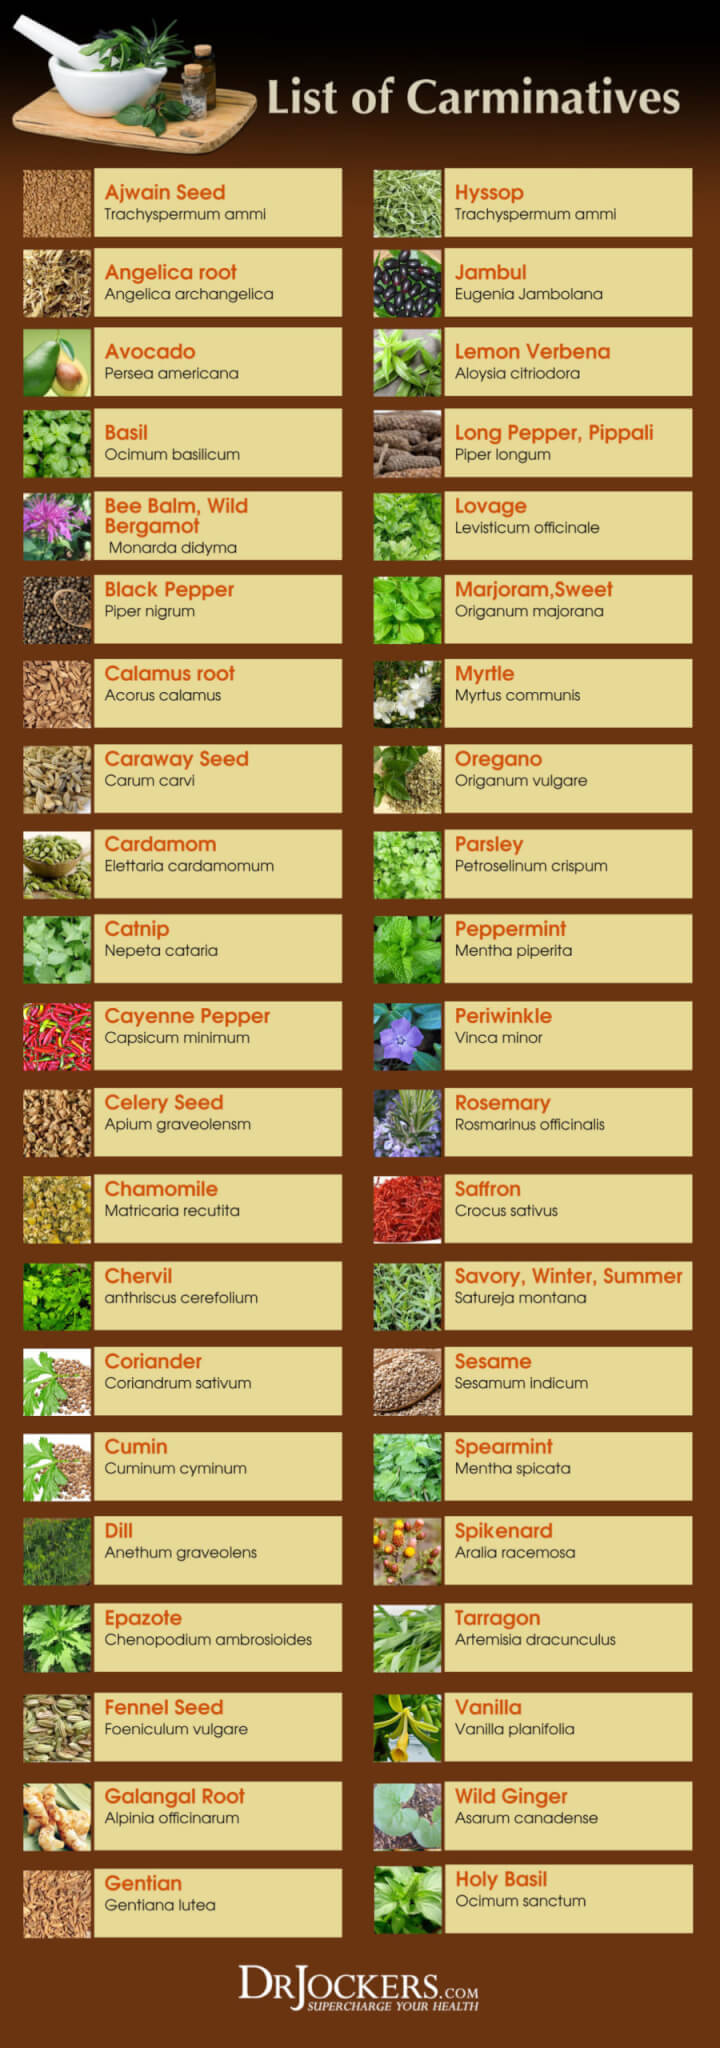 carminative herbs, 7 Reasons to Use Carminative Herbs